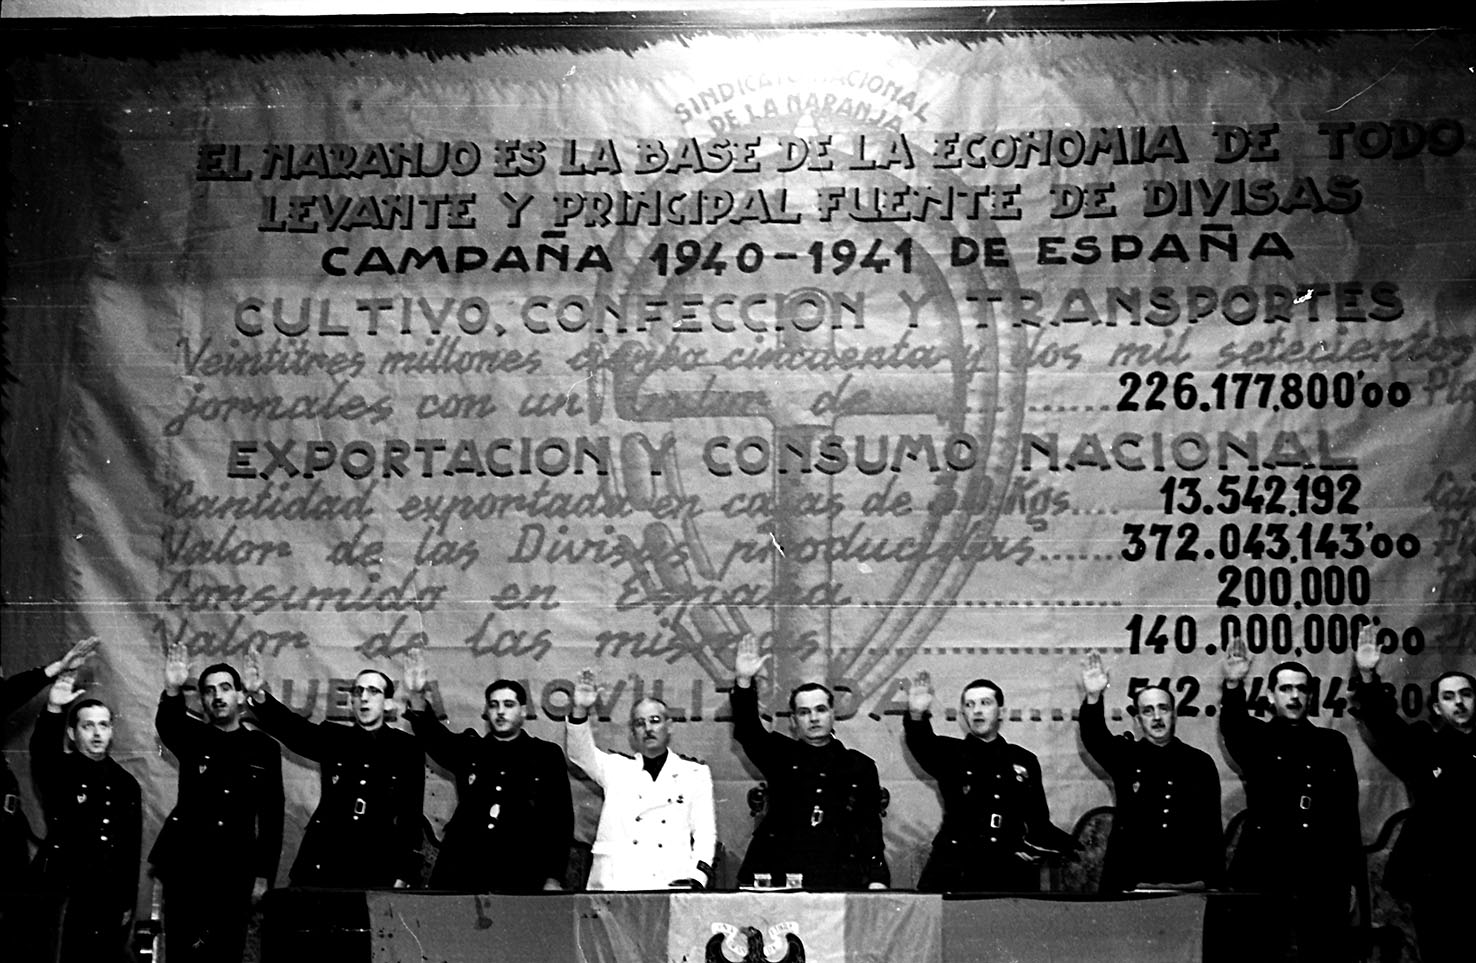 Reunió del Sindicat de la Taronja. 1941. (Luis Vidal Corella)